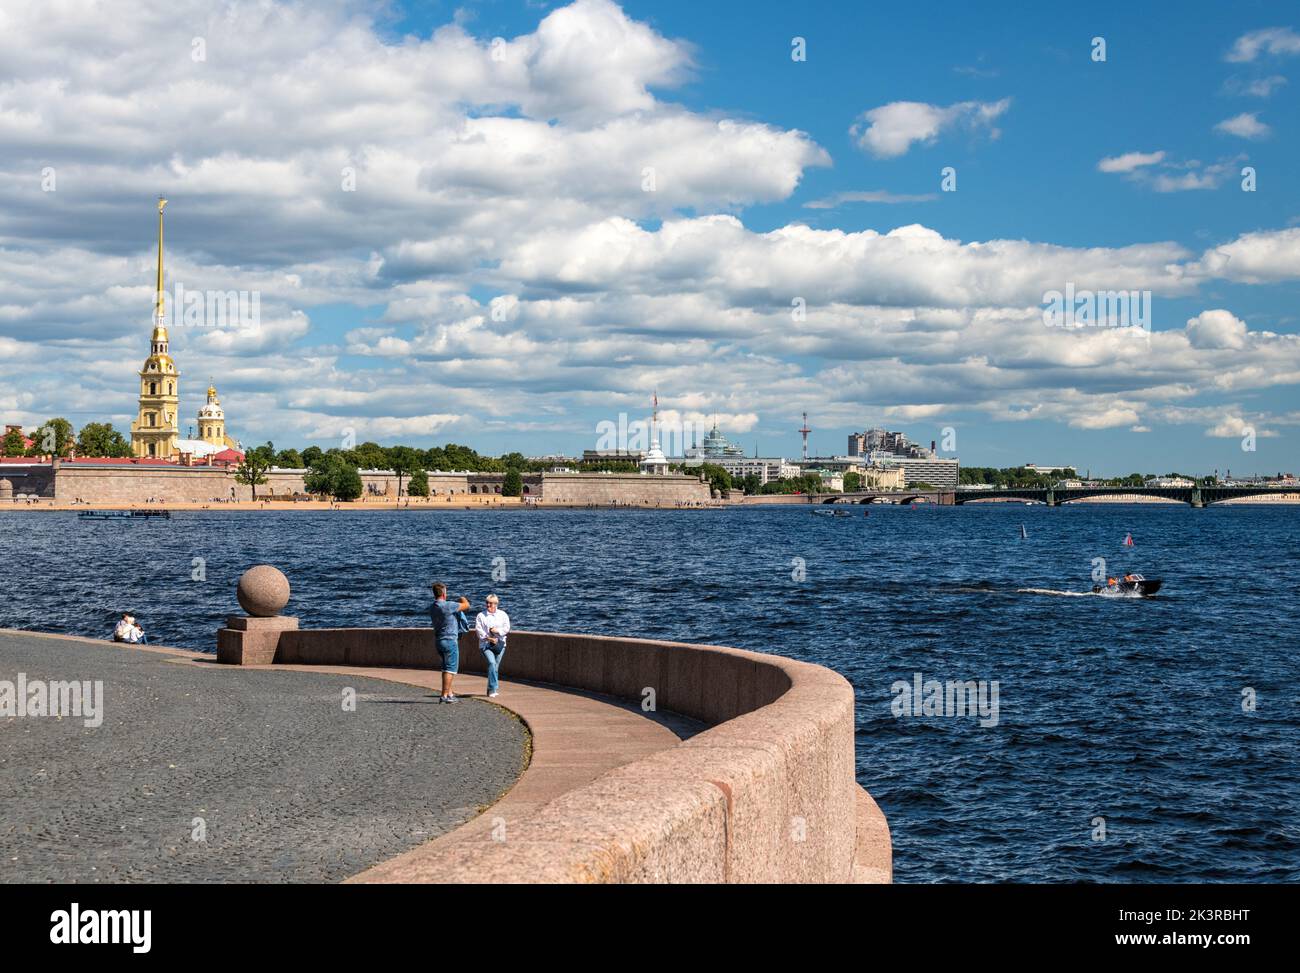 Vue vers la forteresse Pierre et Paul depuis Strelka (Spit) de l'île Vasilievsky, Saint-Pétersbourg, Russie Banque D'Images